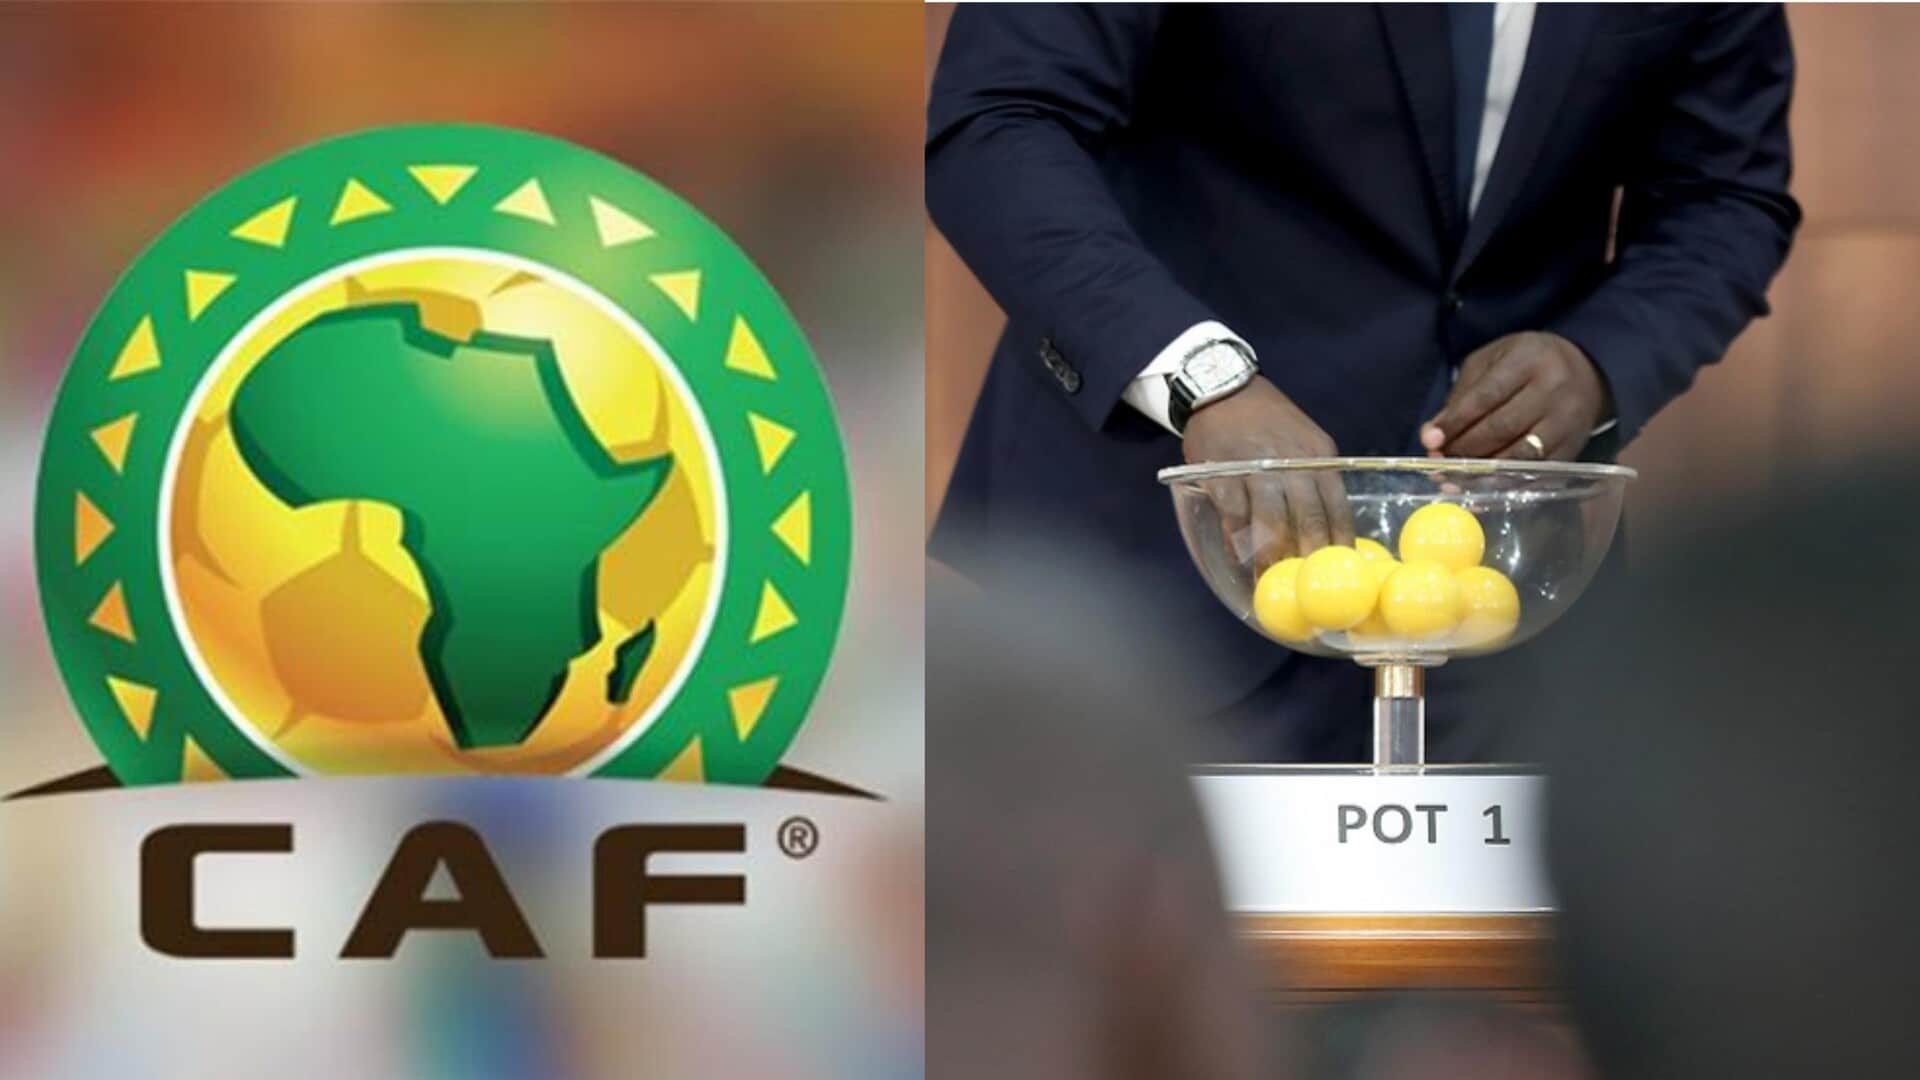 نتيجة قرعة دوري أبطال أفريقيا 2023